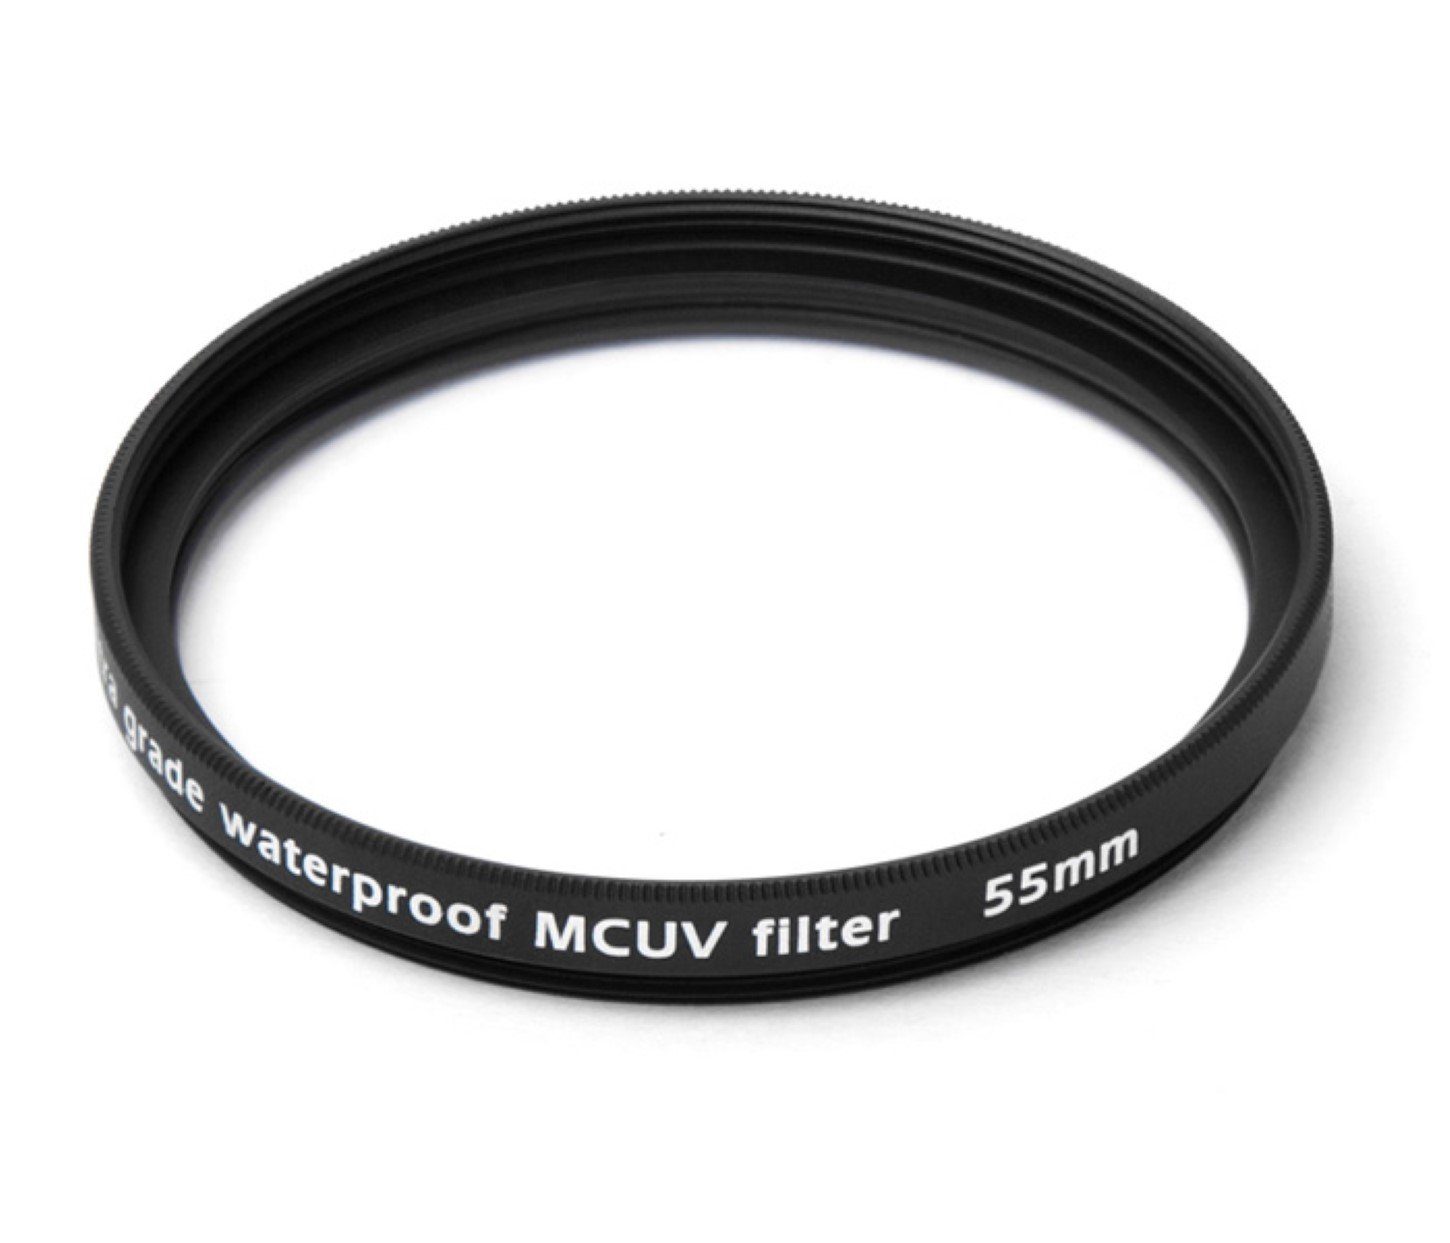 Filter mm Multicoated wasserfest Foto-UV-Filter Pixel UV 55 vergütet